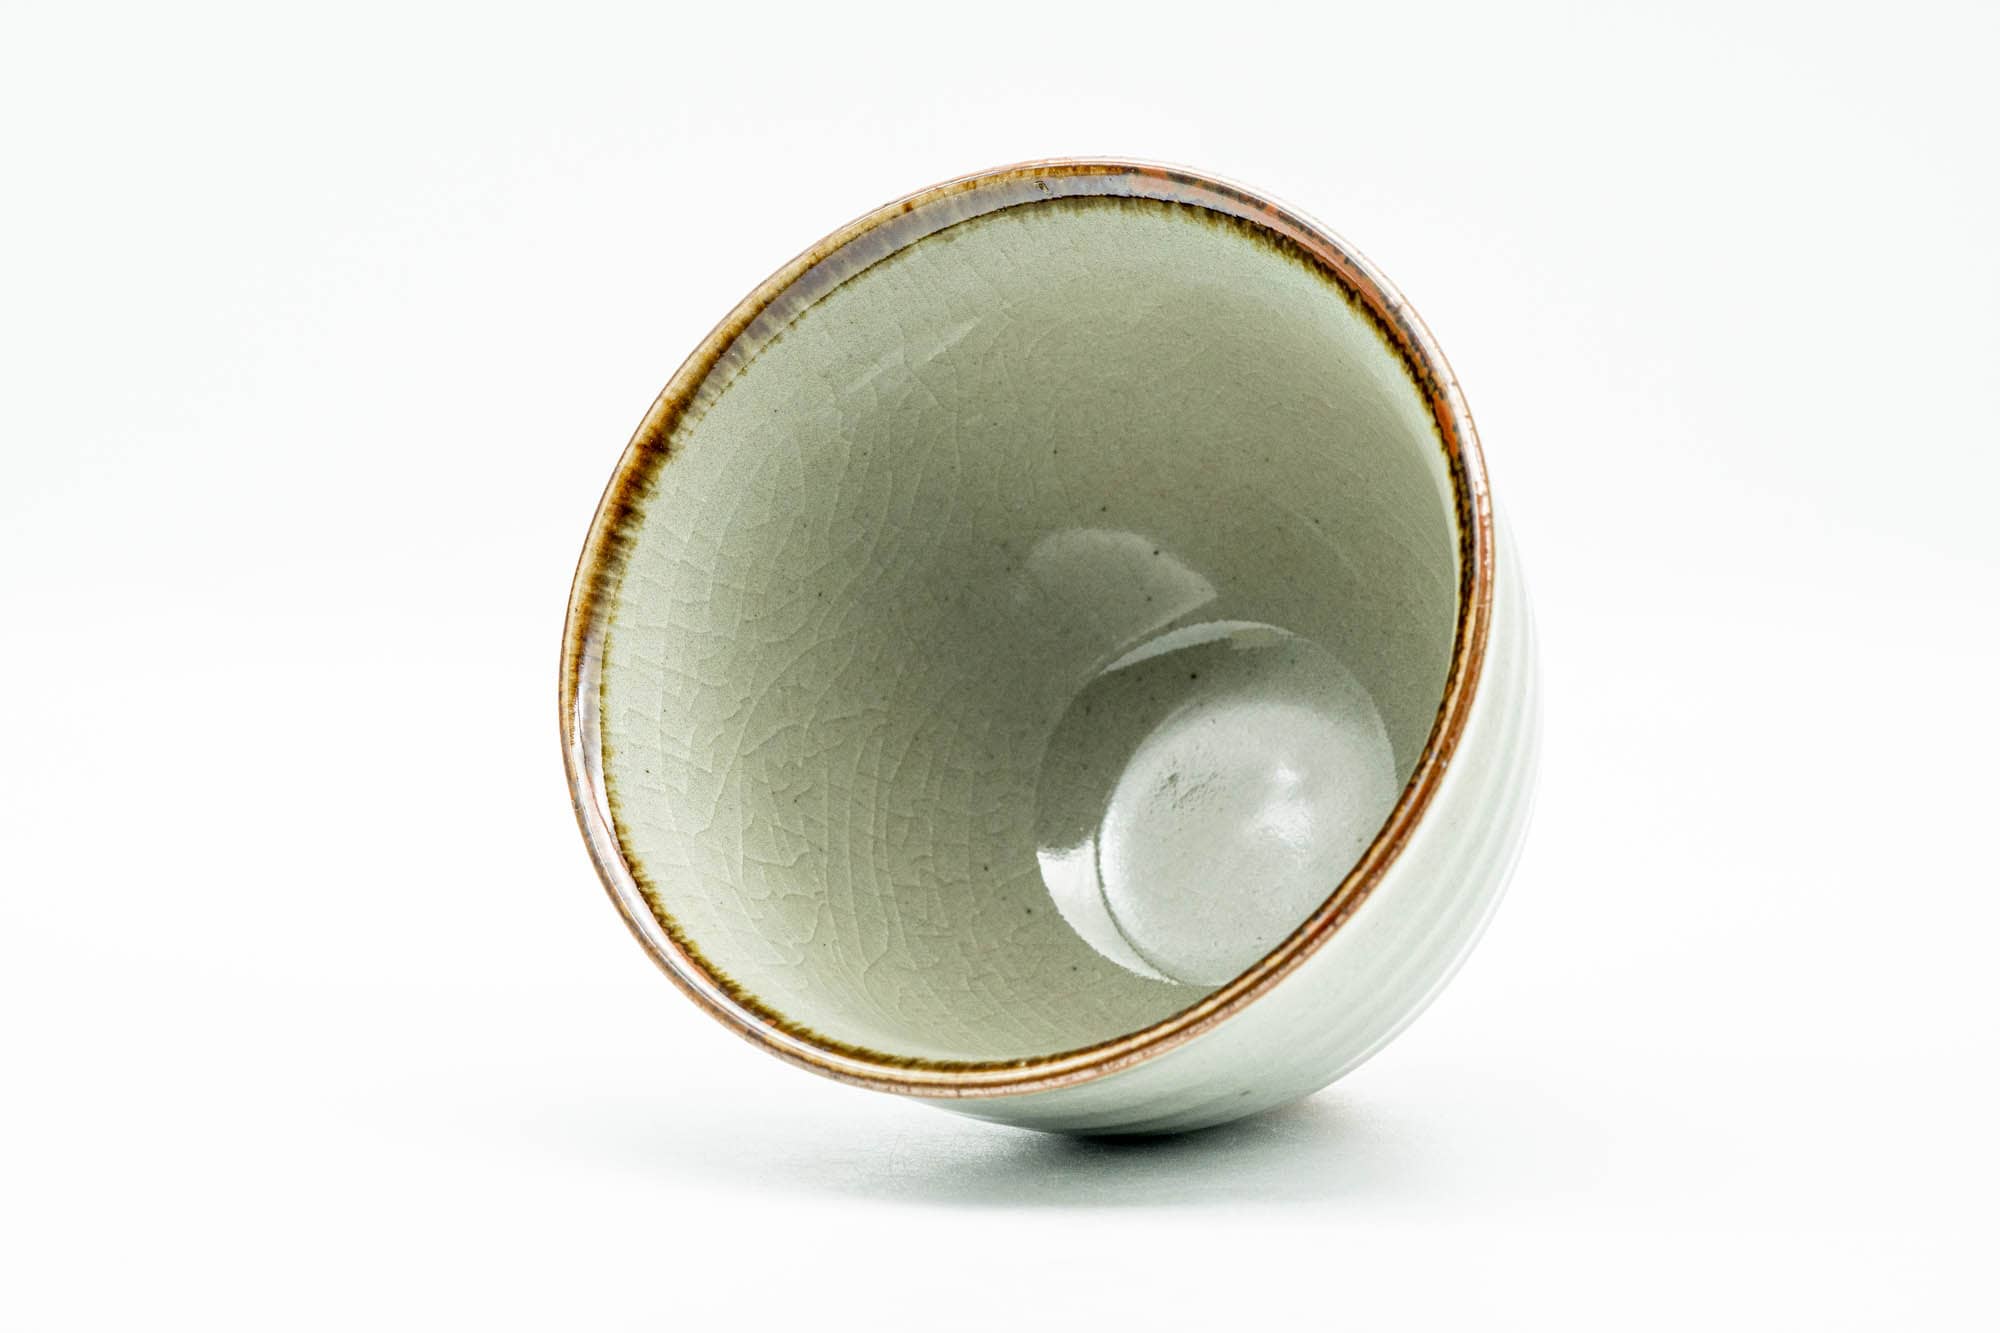 Japanese Teacup - Green Celadon Glazed Spiraling Yunomi - 140ml